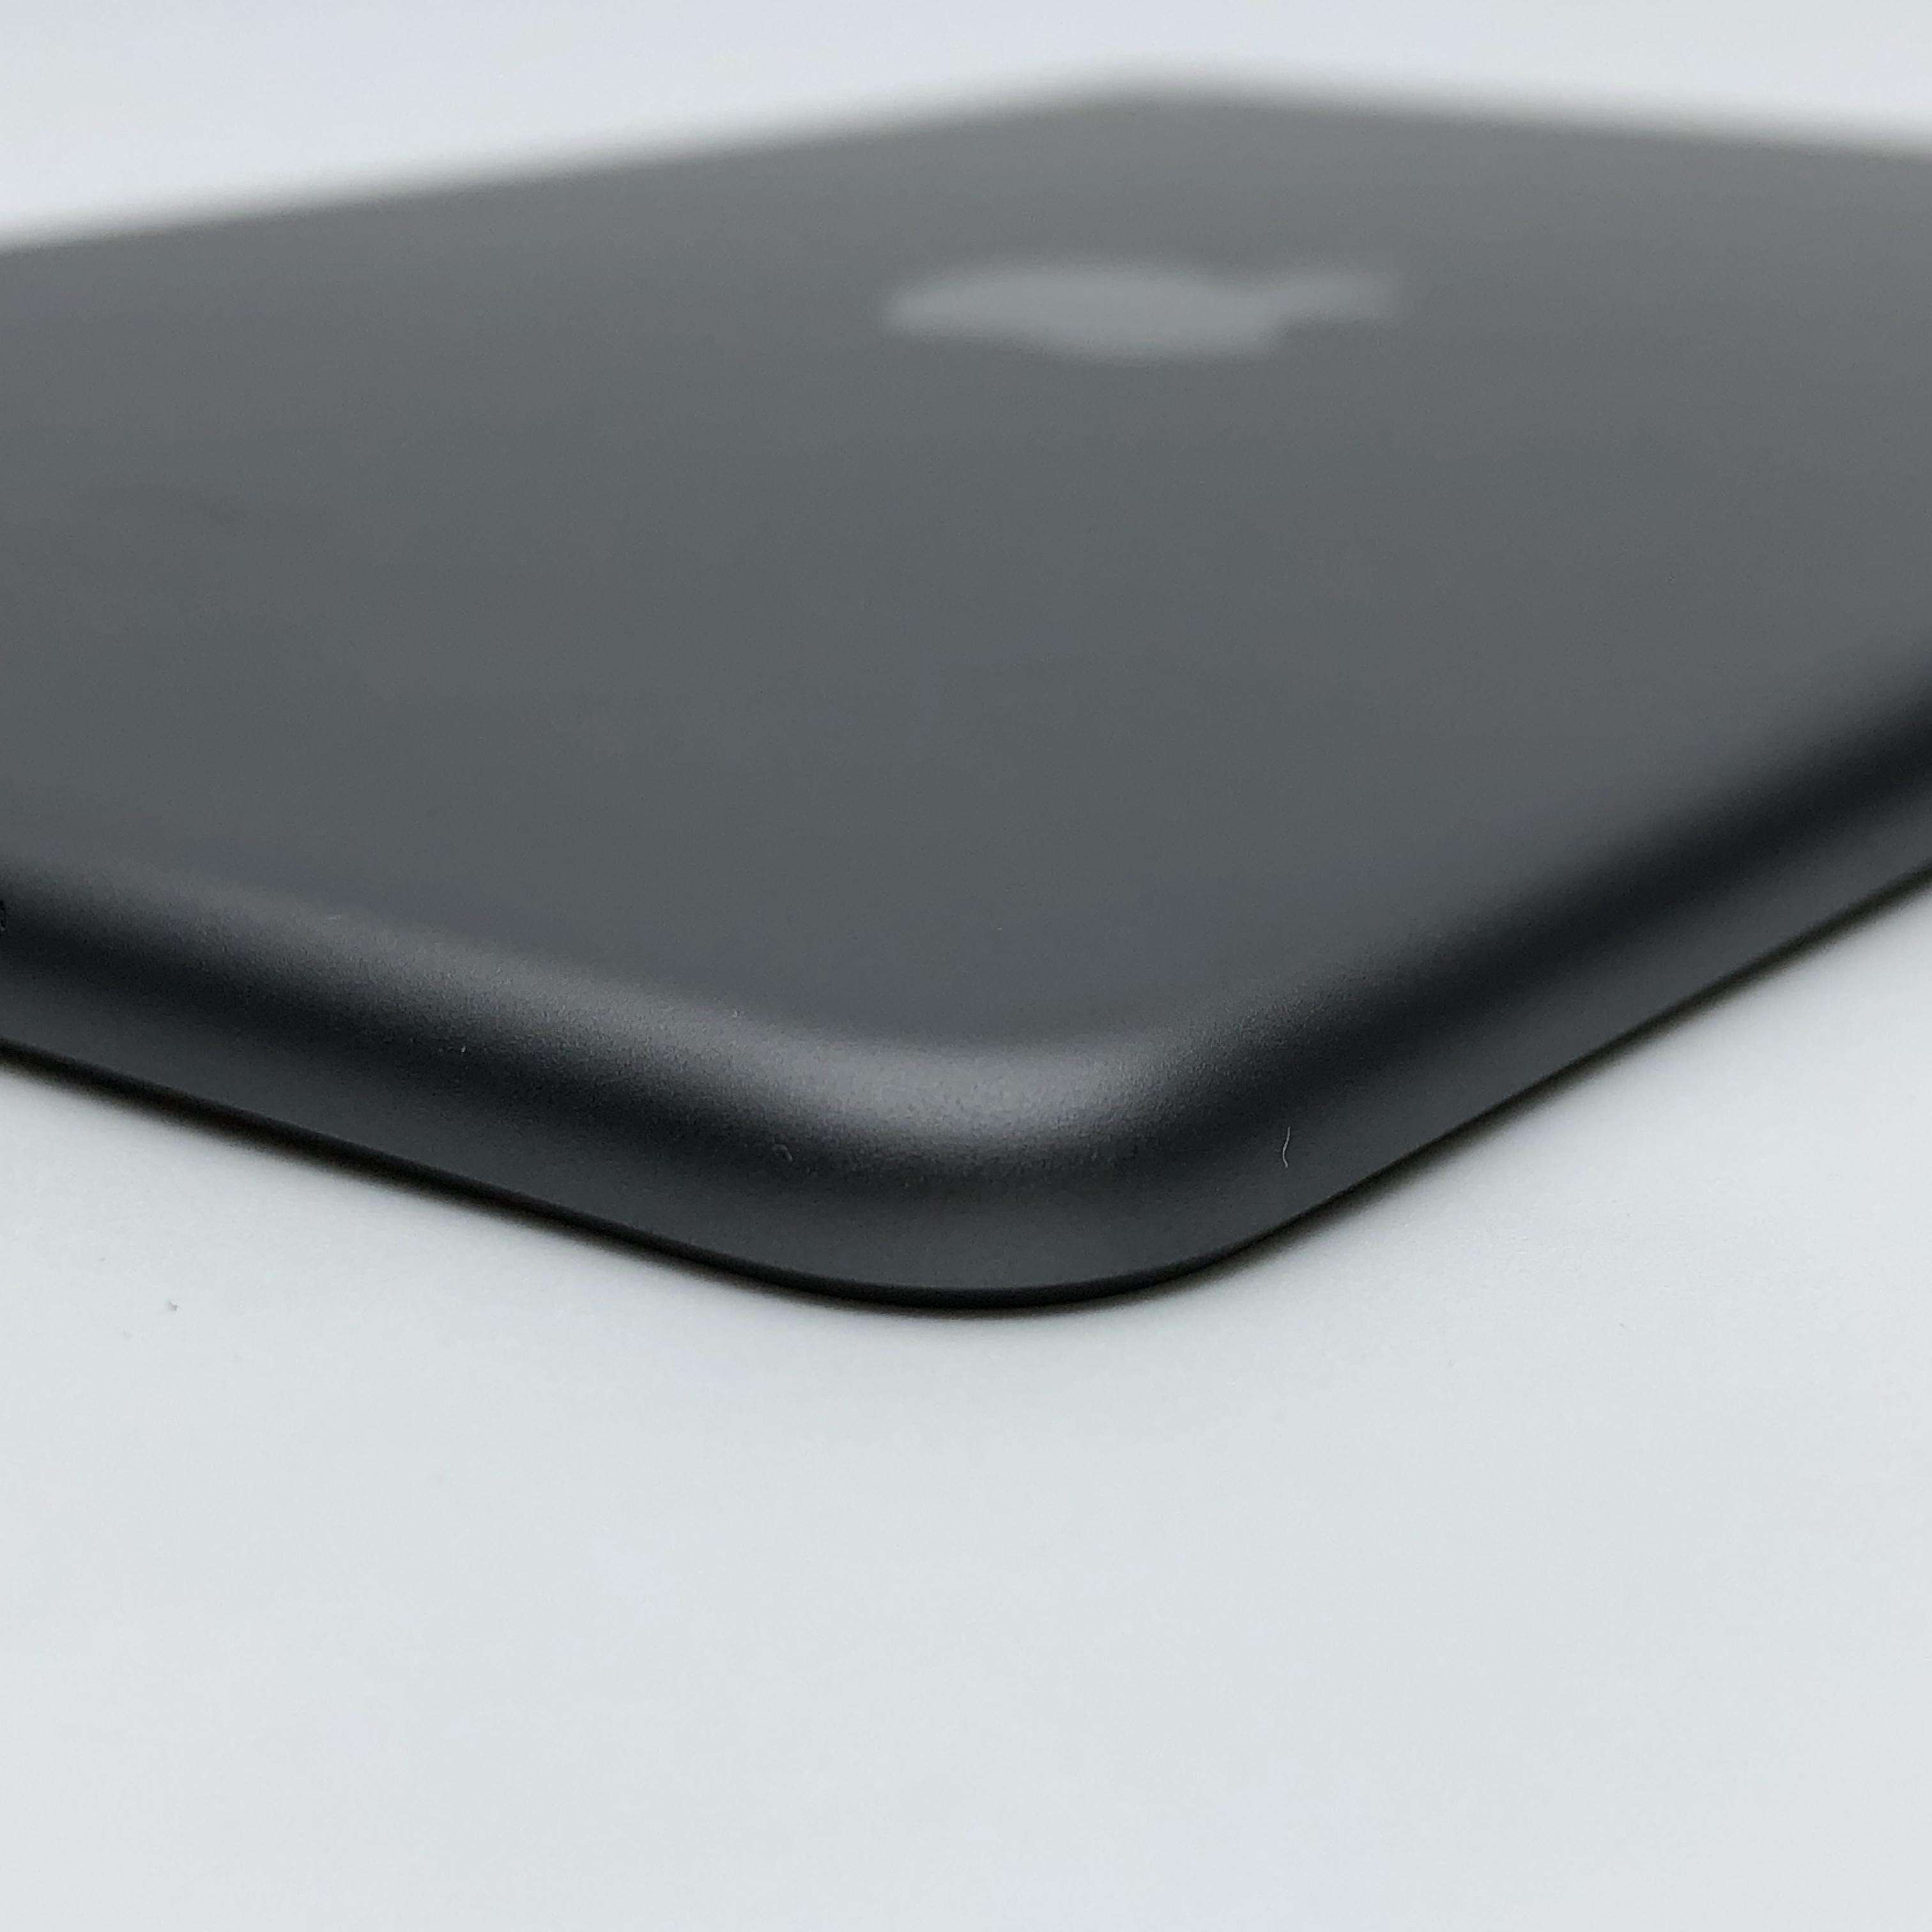 iPad mini 5 256G WIFI版 深空灰色